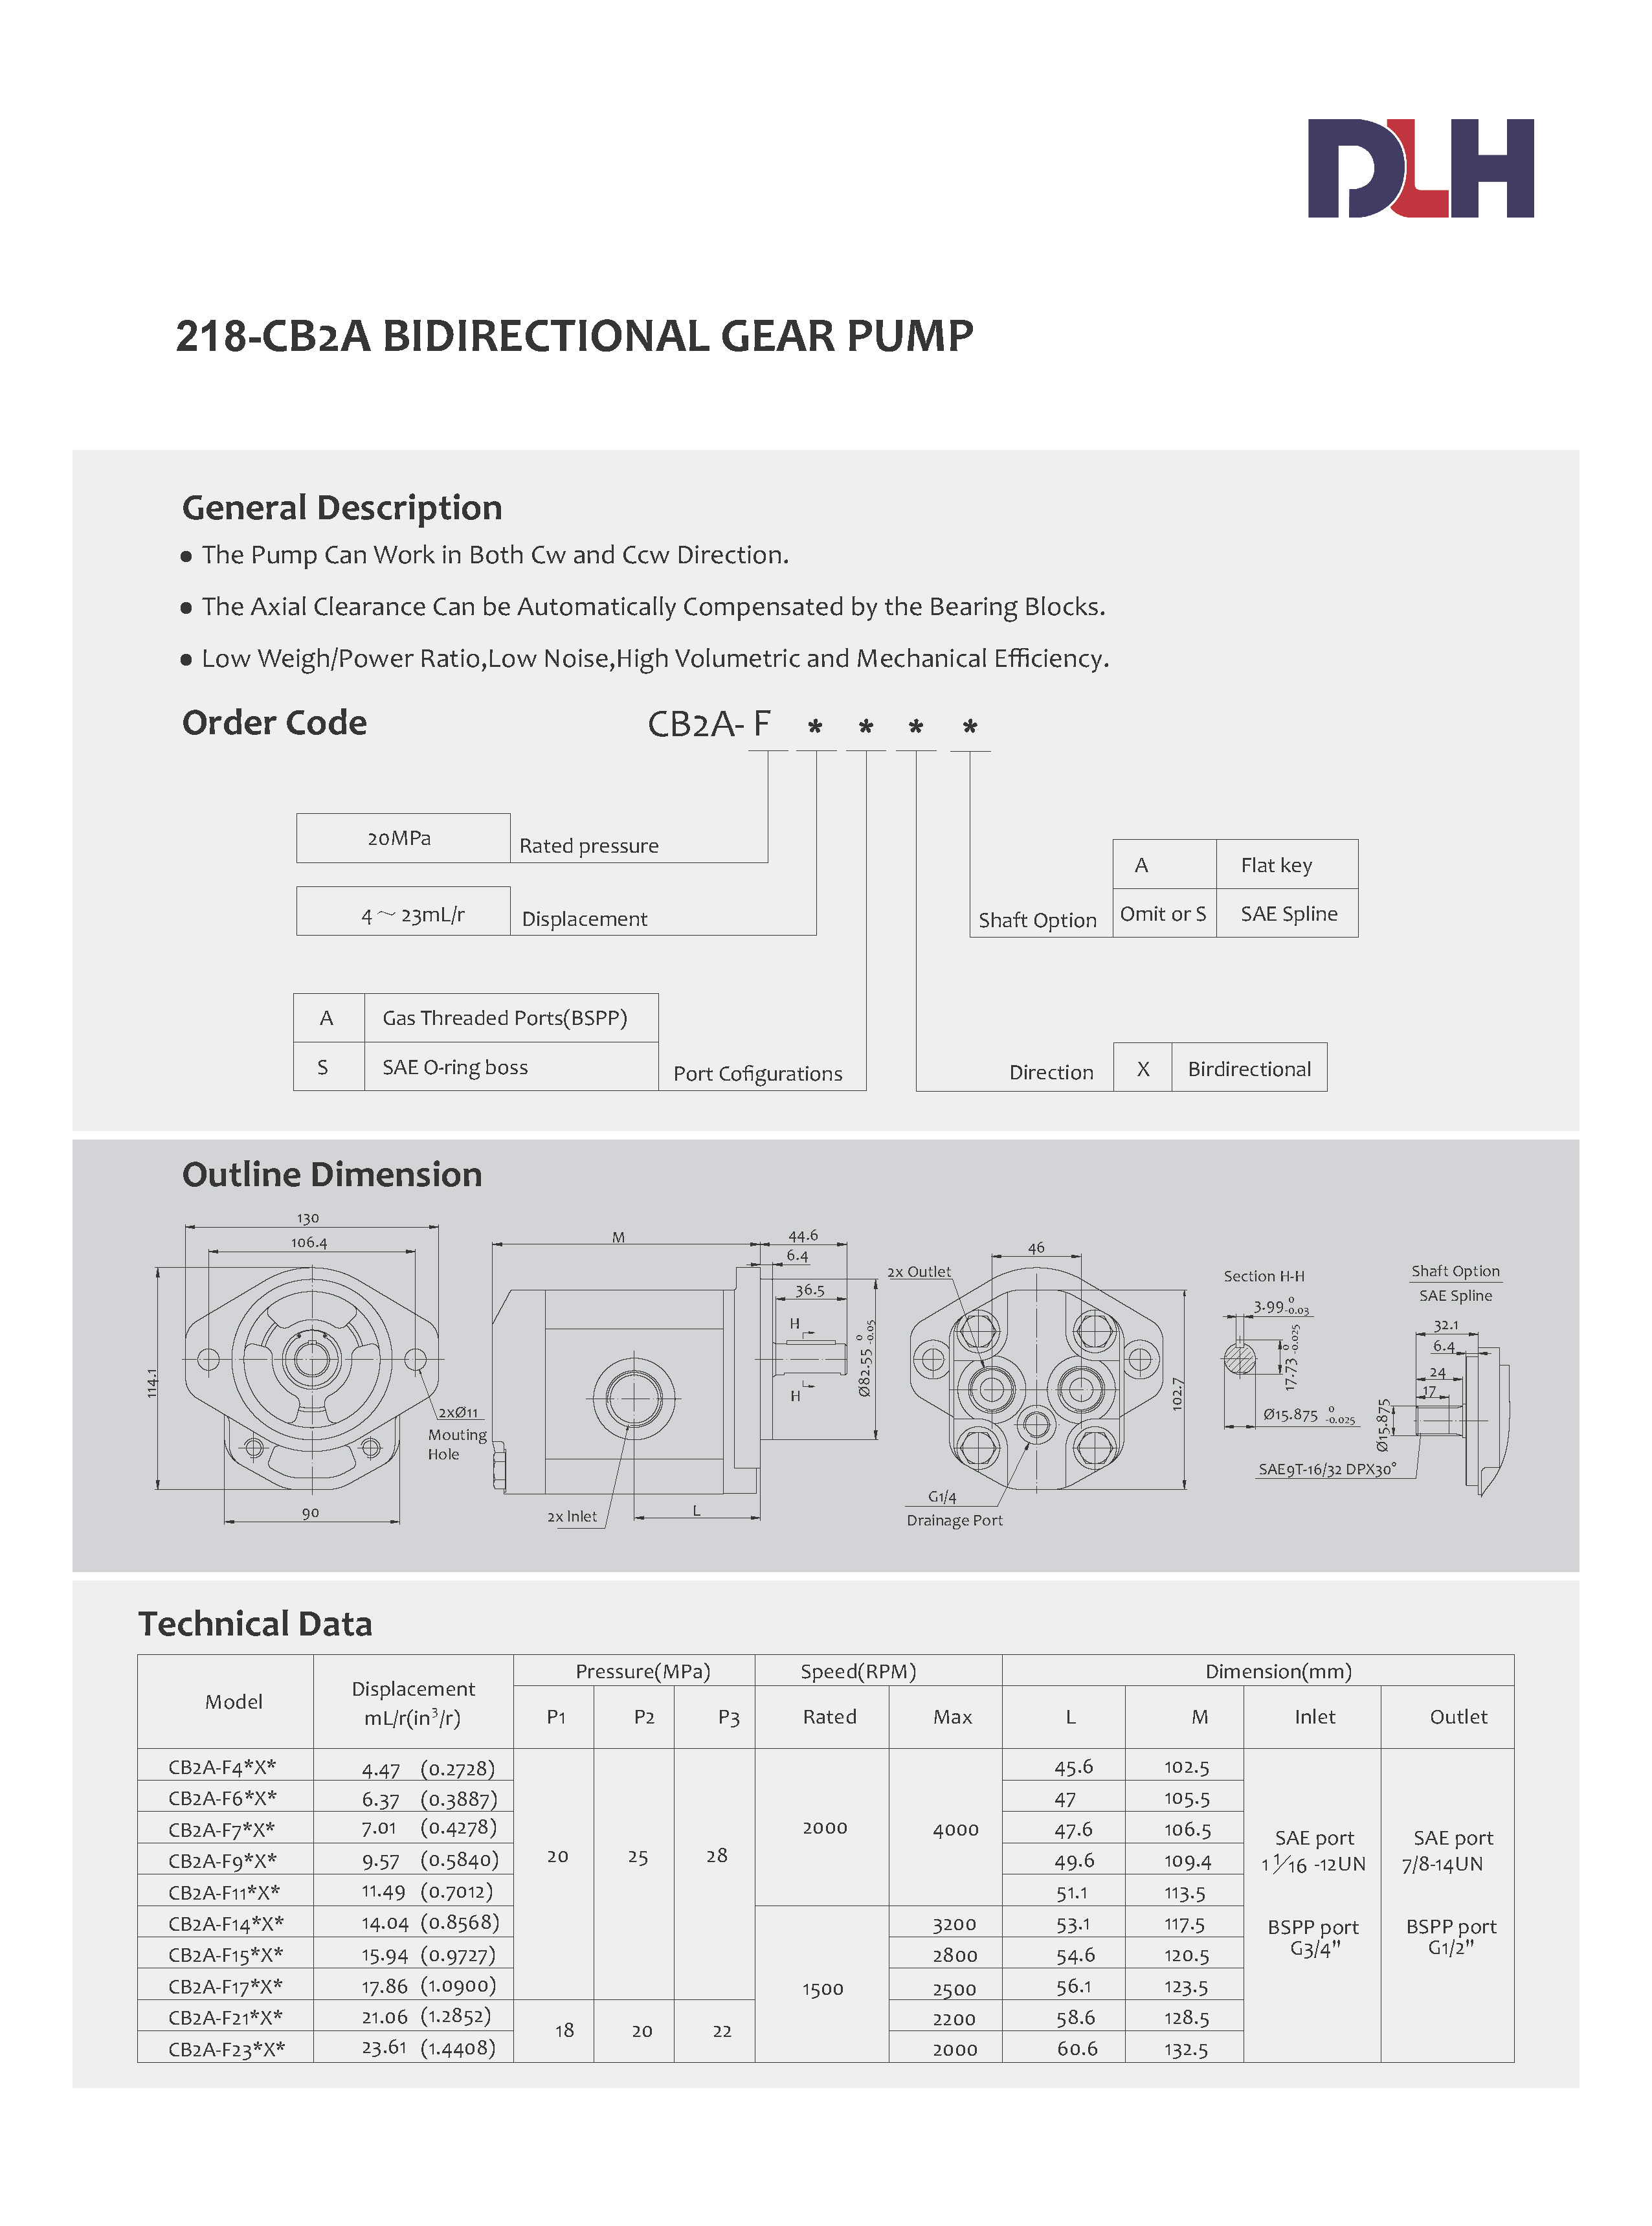 CB2A Bi-Directional Gear Pumps